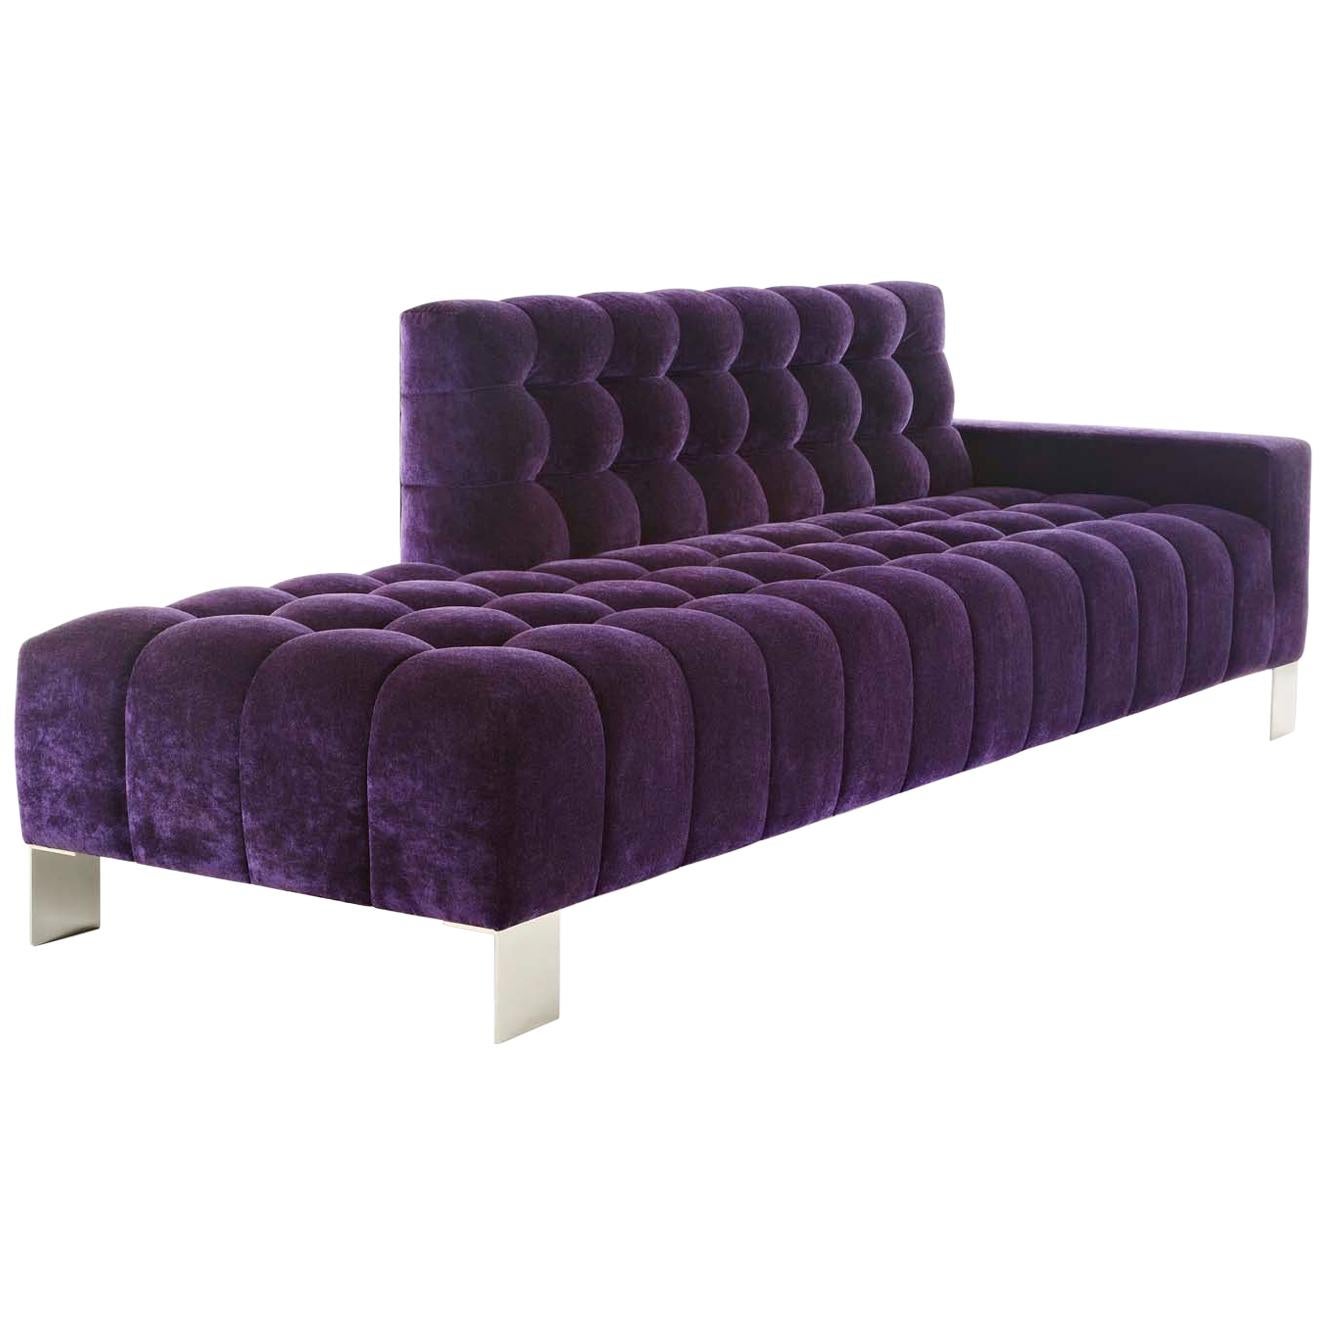 Mini canapé Abyss canapé cannelé avec pieds en métal touffeté profond et velours violet personnalisé